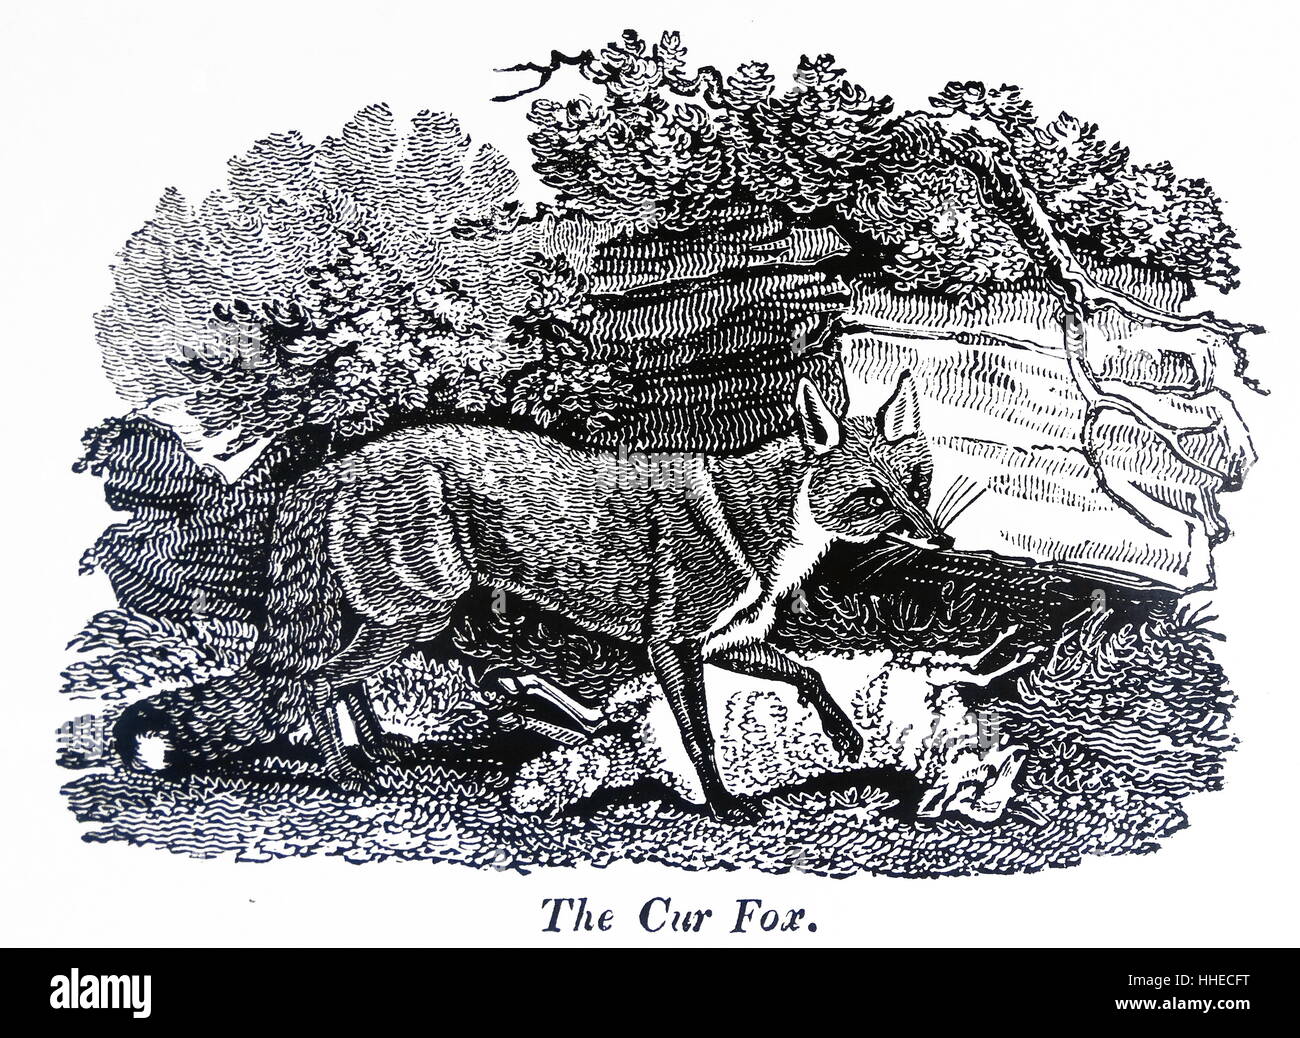 La Fox. Siméon de Nature Shaw affichées, Londres, 1823 Banque D'Images